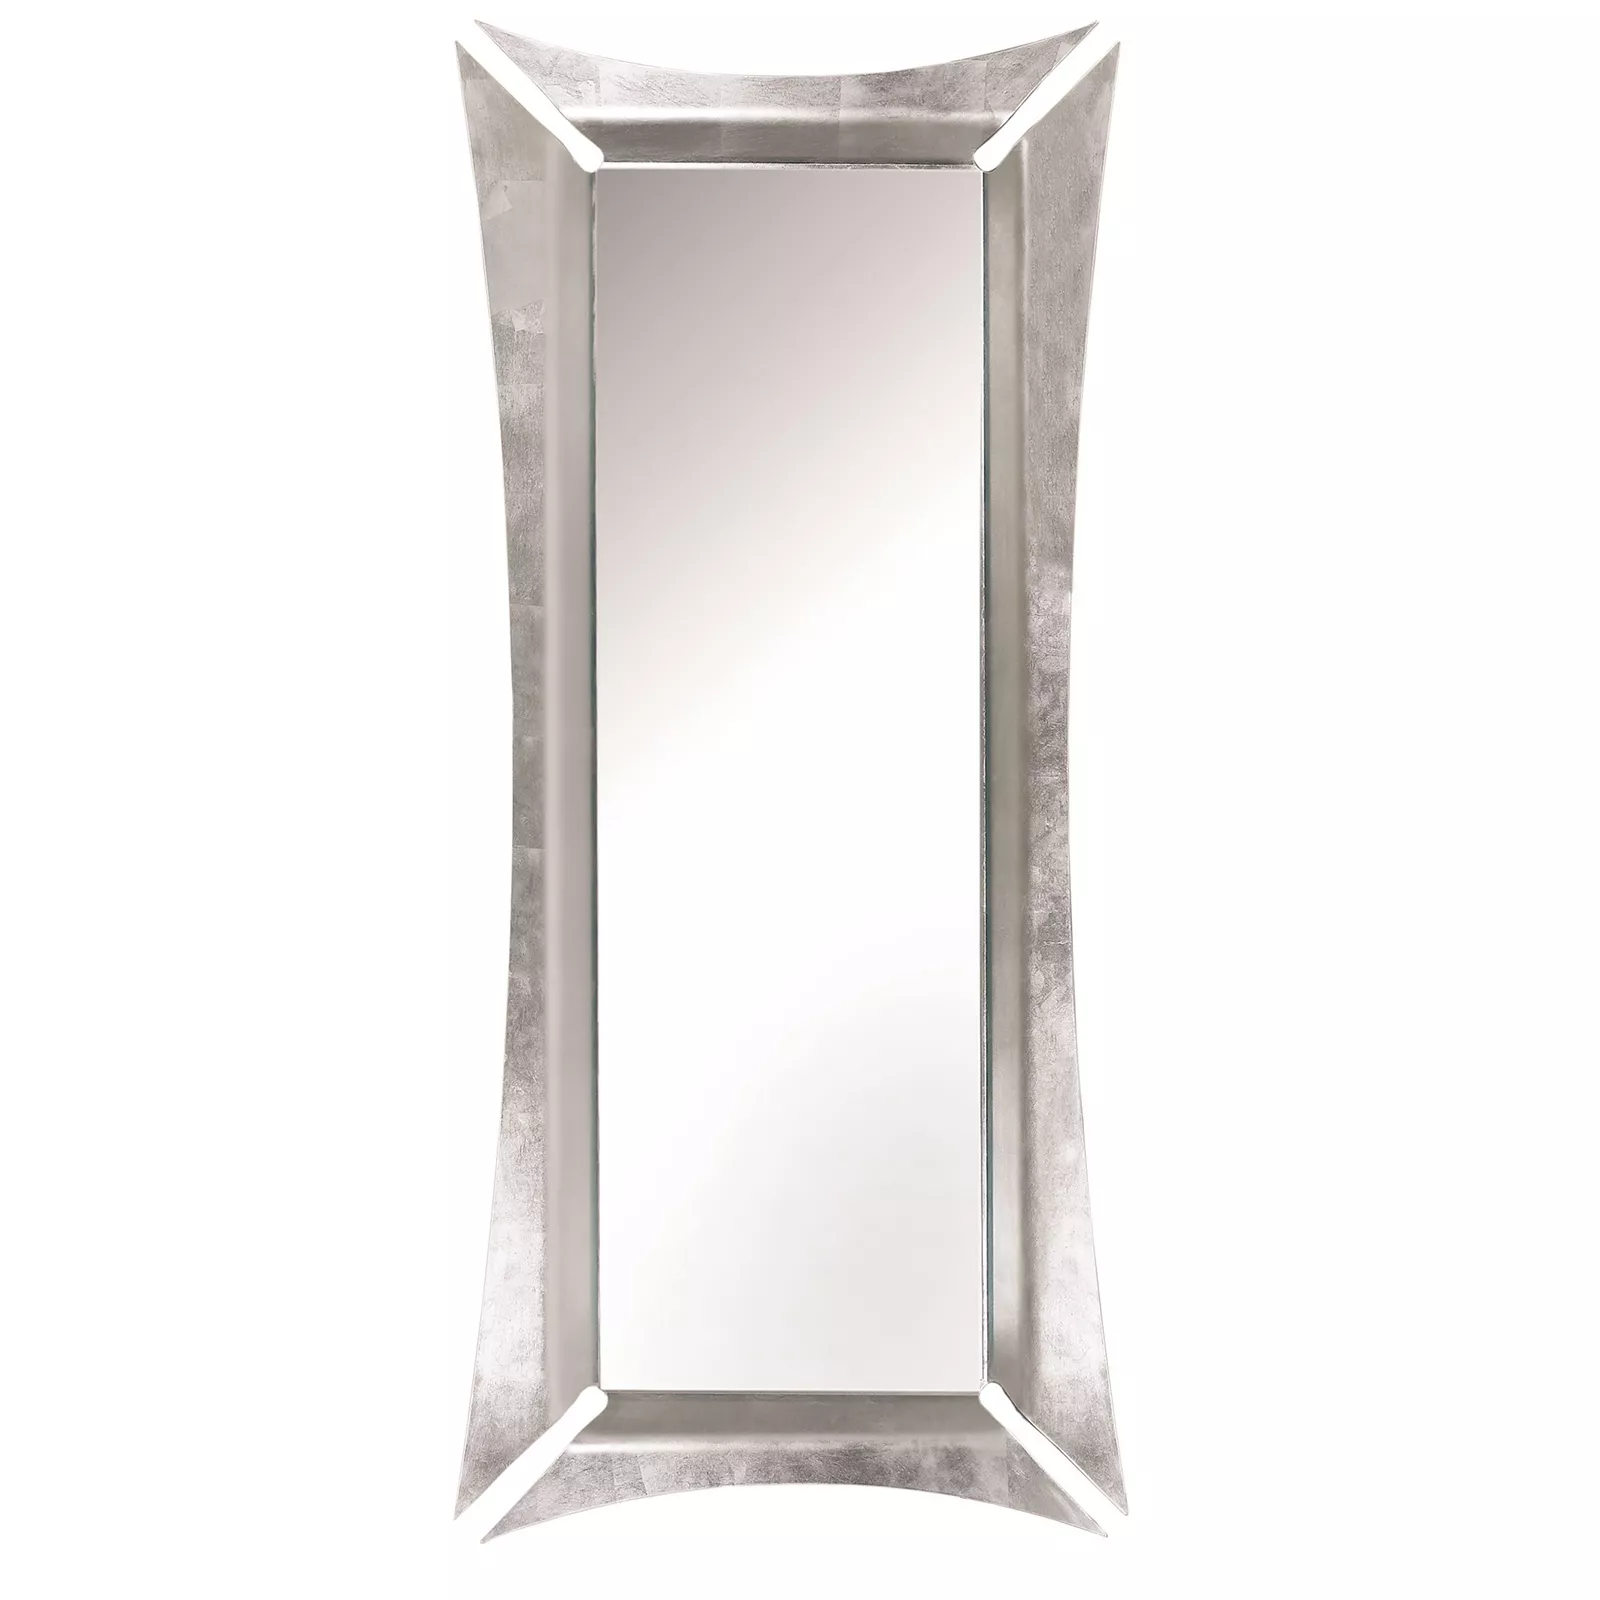 Specchio da terra in foglia argento design moderno - 3596